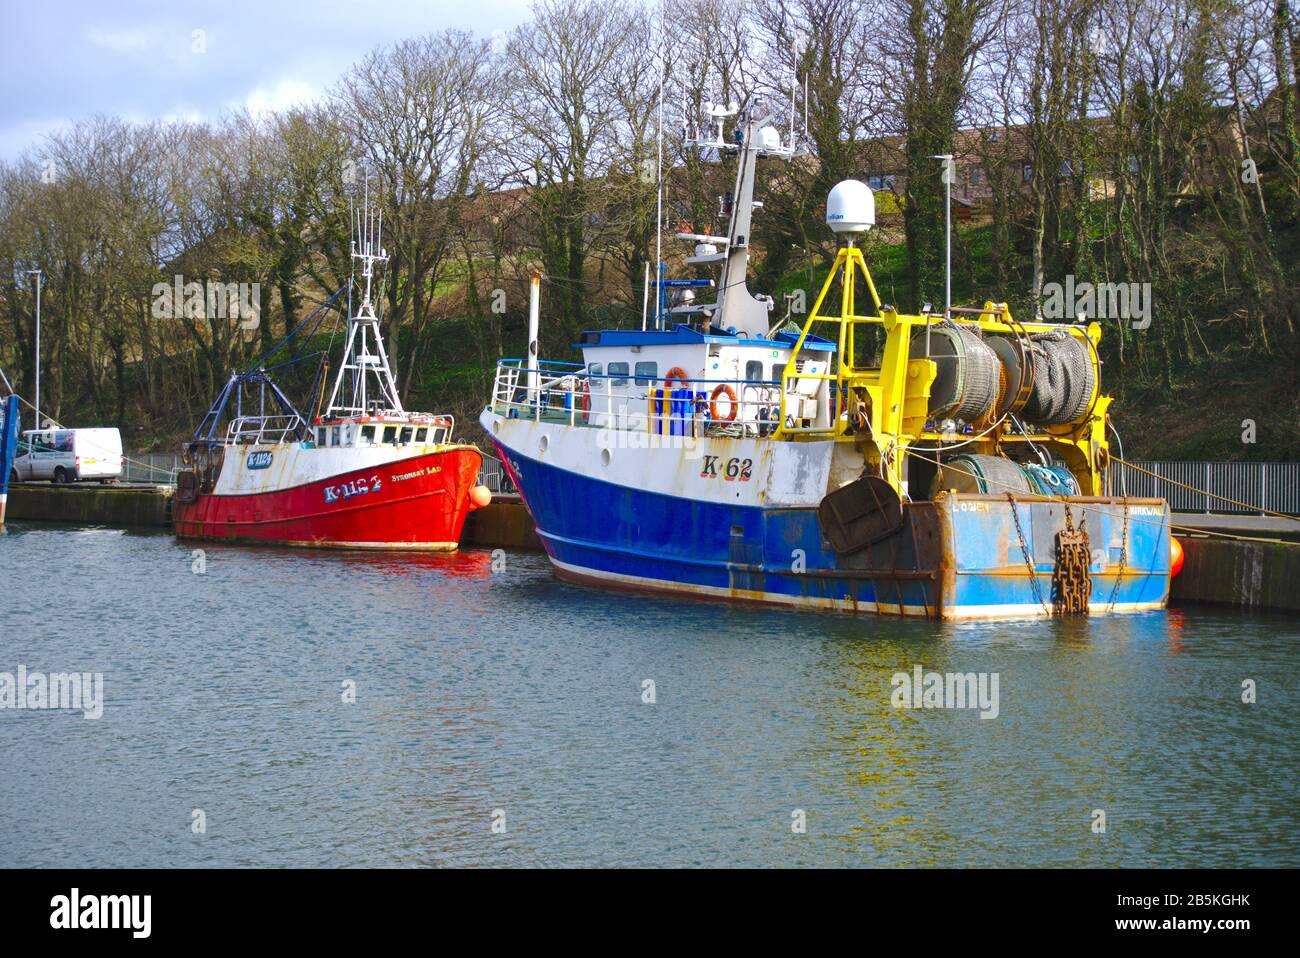 Pescherecci da traino per la pesca registrati a Kirkwall l'Ogien K62 e Stronsay Lad K1124 a Eyemouth Harbor, Berwickshire, Confine scozzese, Regno Unito Foto Stock